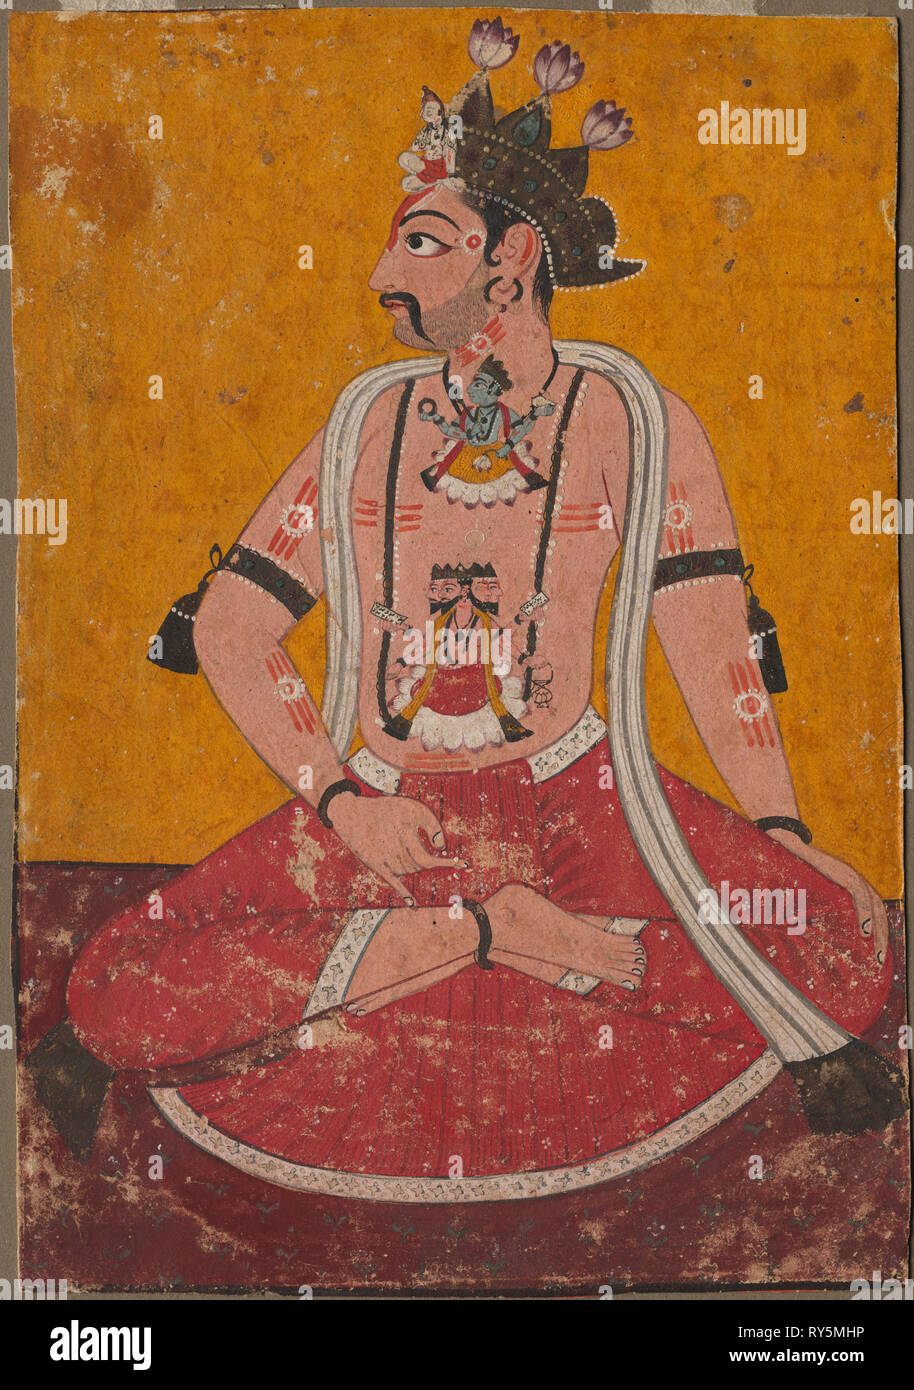 Homme Dhata en position de Yogi, ch. 1690-1700. L'Inde, Pahari, Nurpur, fin du 17e siècle. Encre et couleur sur papier ; Total : 20 x 14 cm (7 7/8 x 5 1/2 po Banque D'Images